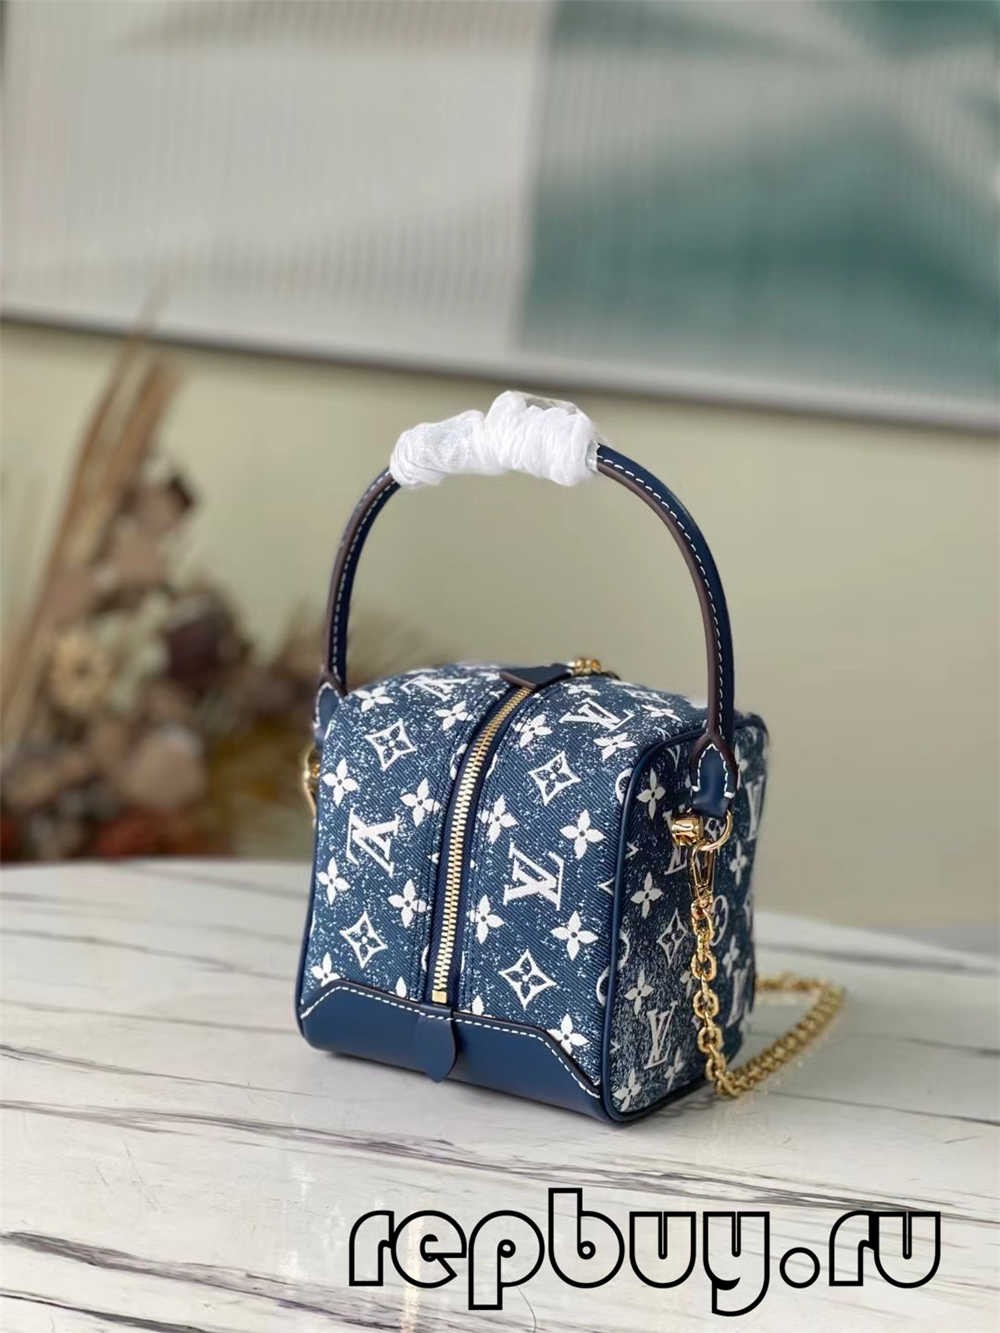 çanta kopje të cilësisë më të mirë të Louis Vuitton SQUARE (2022 më e fundit)-Dyqani në internet i çantave të rreme Louis Vuitton me cilësi më të mirë, çanta modeli kopje ru